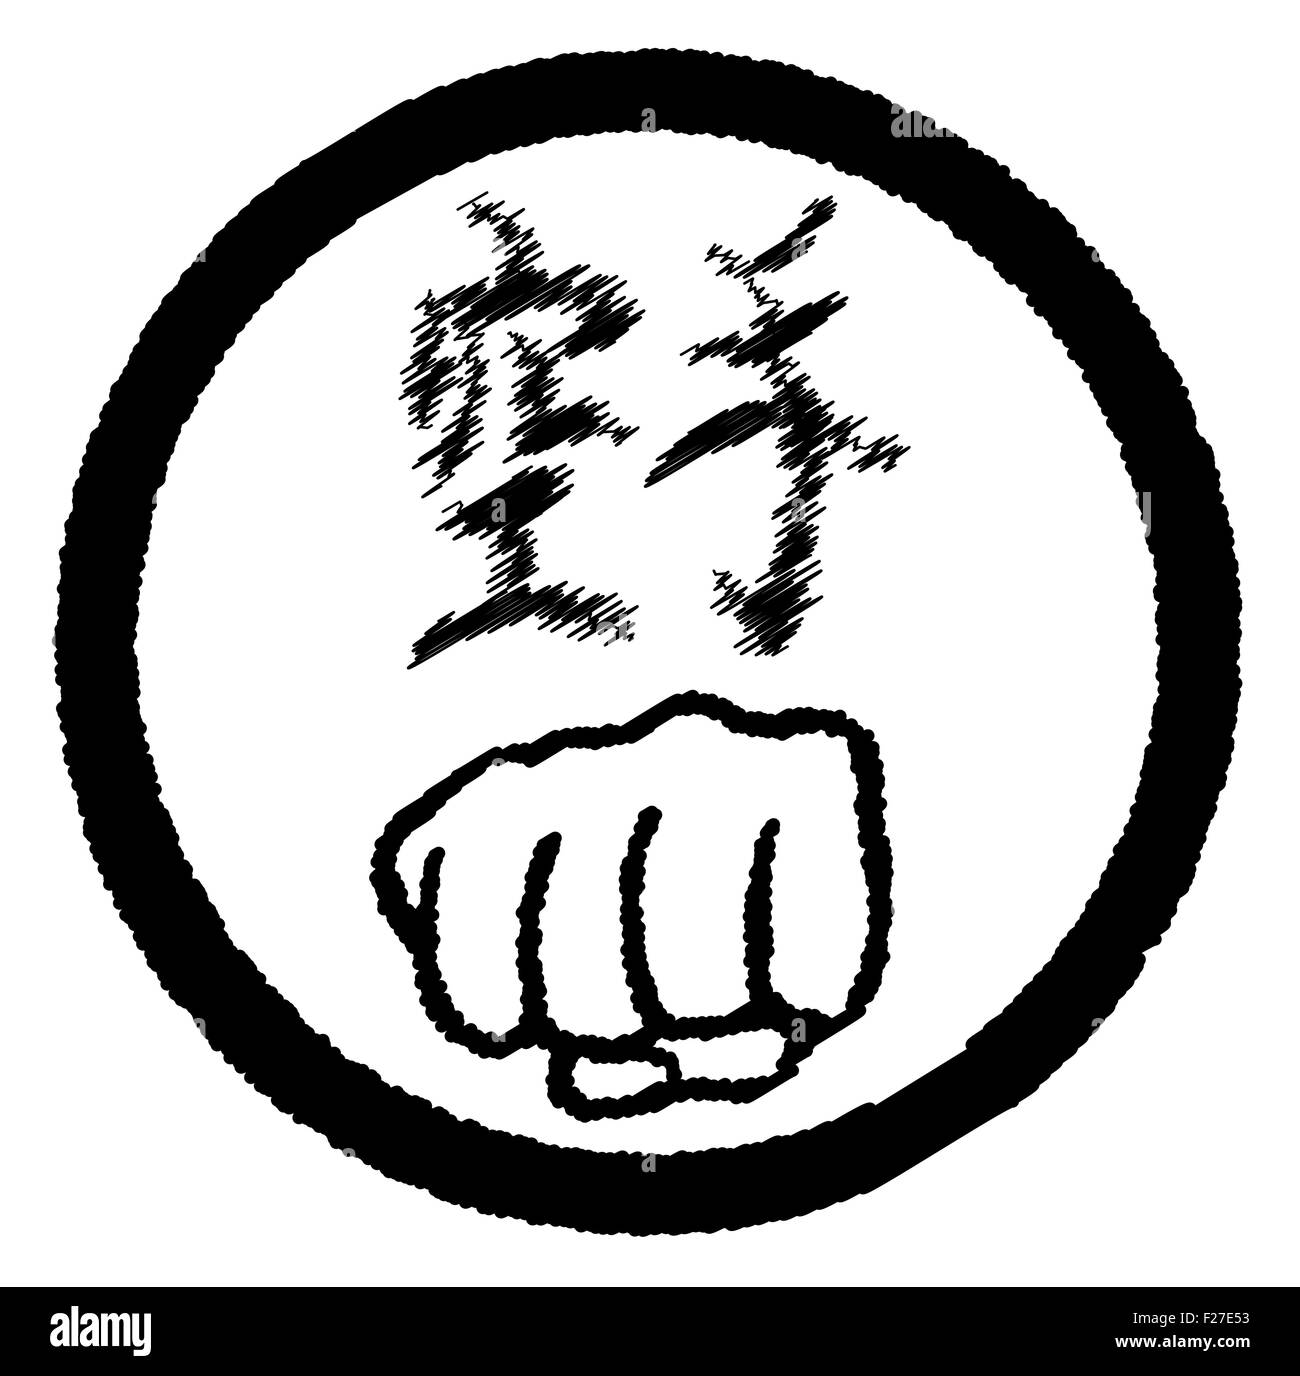 L'écriture japonais pour le mot Karaté situé dans un cercle avec le poing fermé Banque D'Images